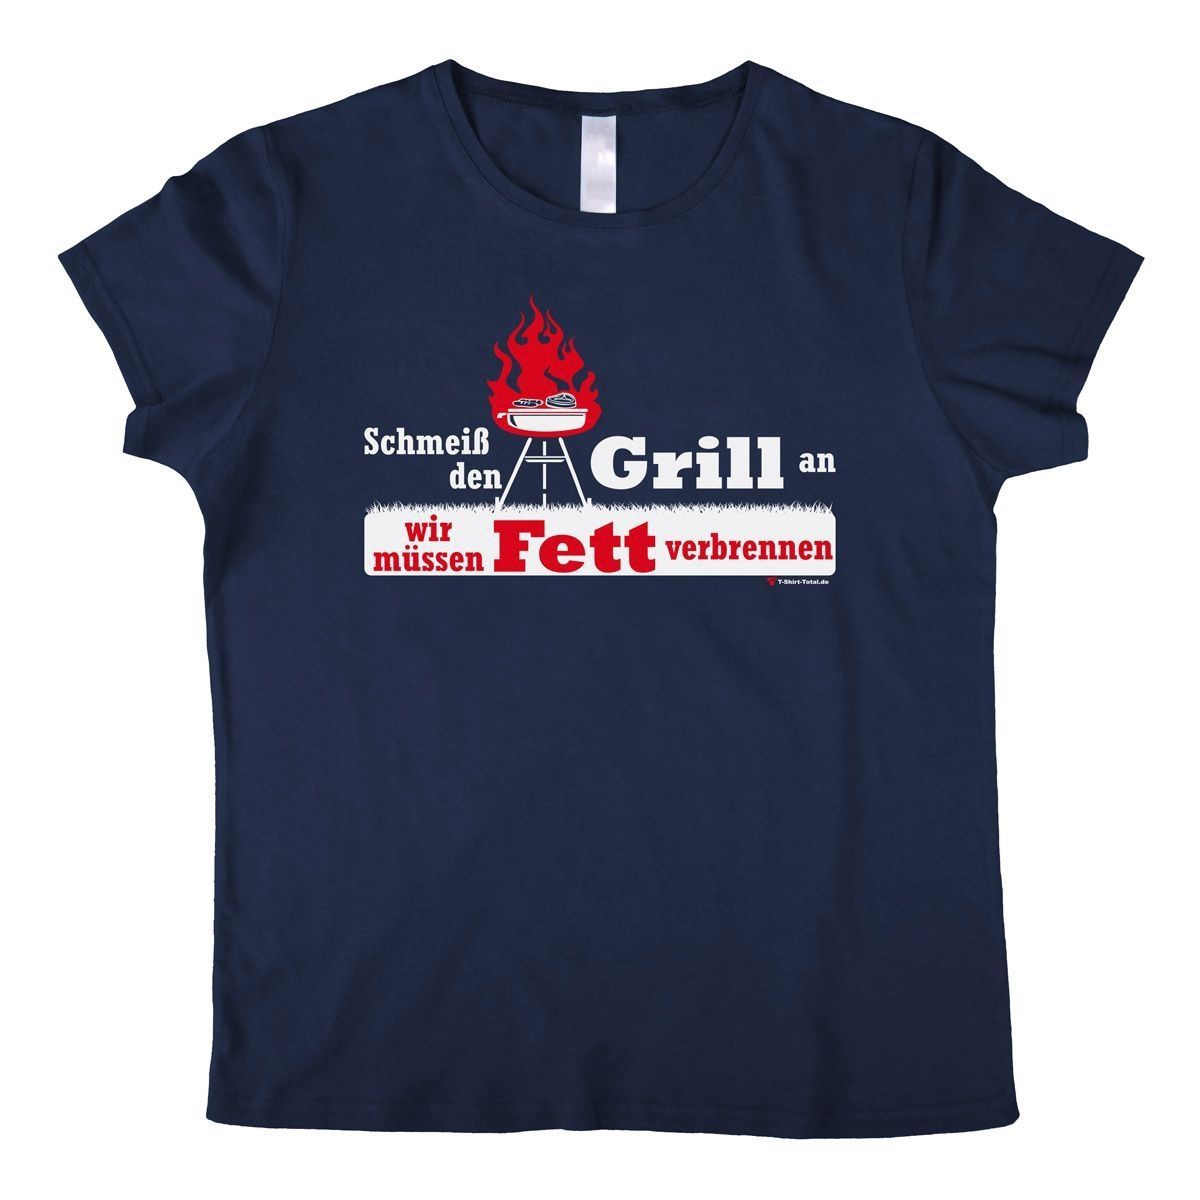 Fett verbrennen Woman T-Shirt navy Small